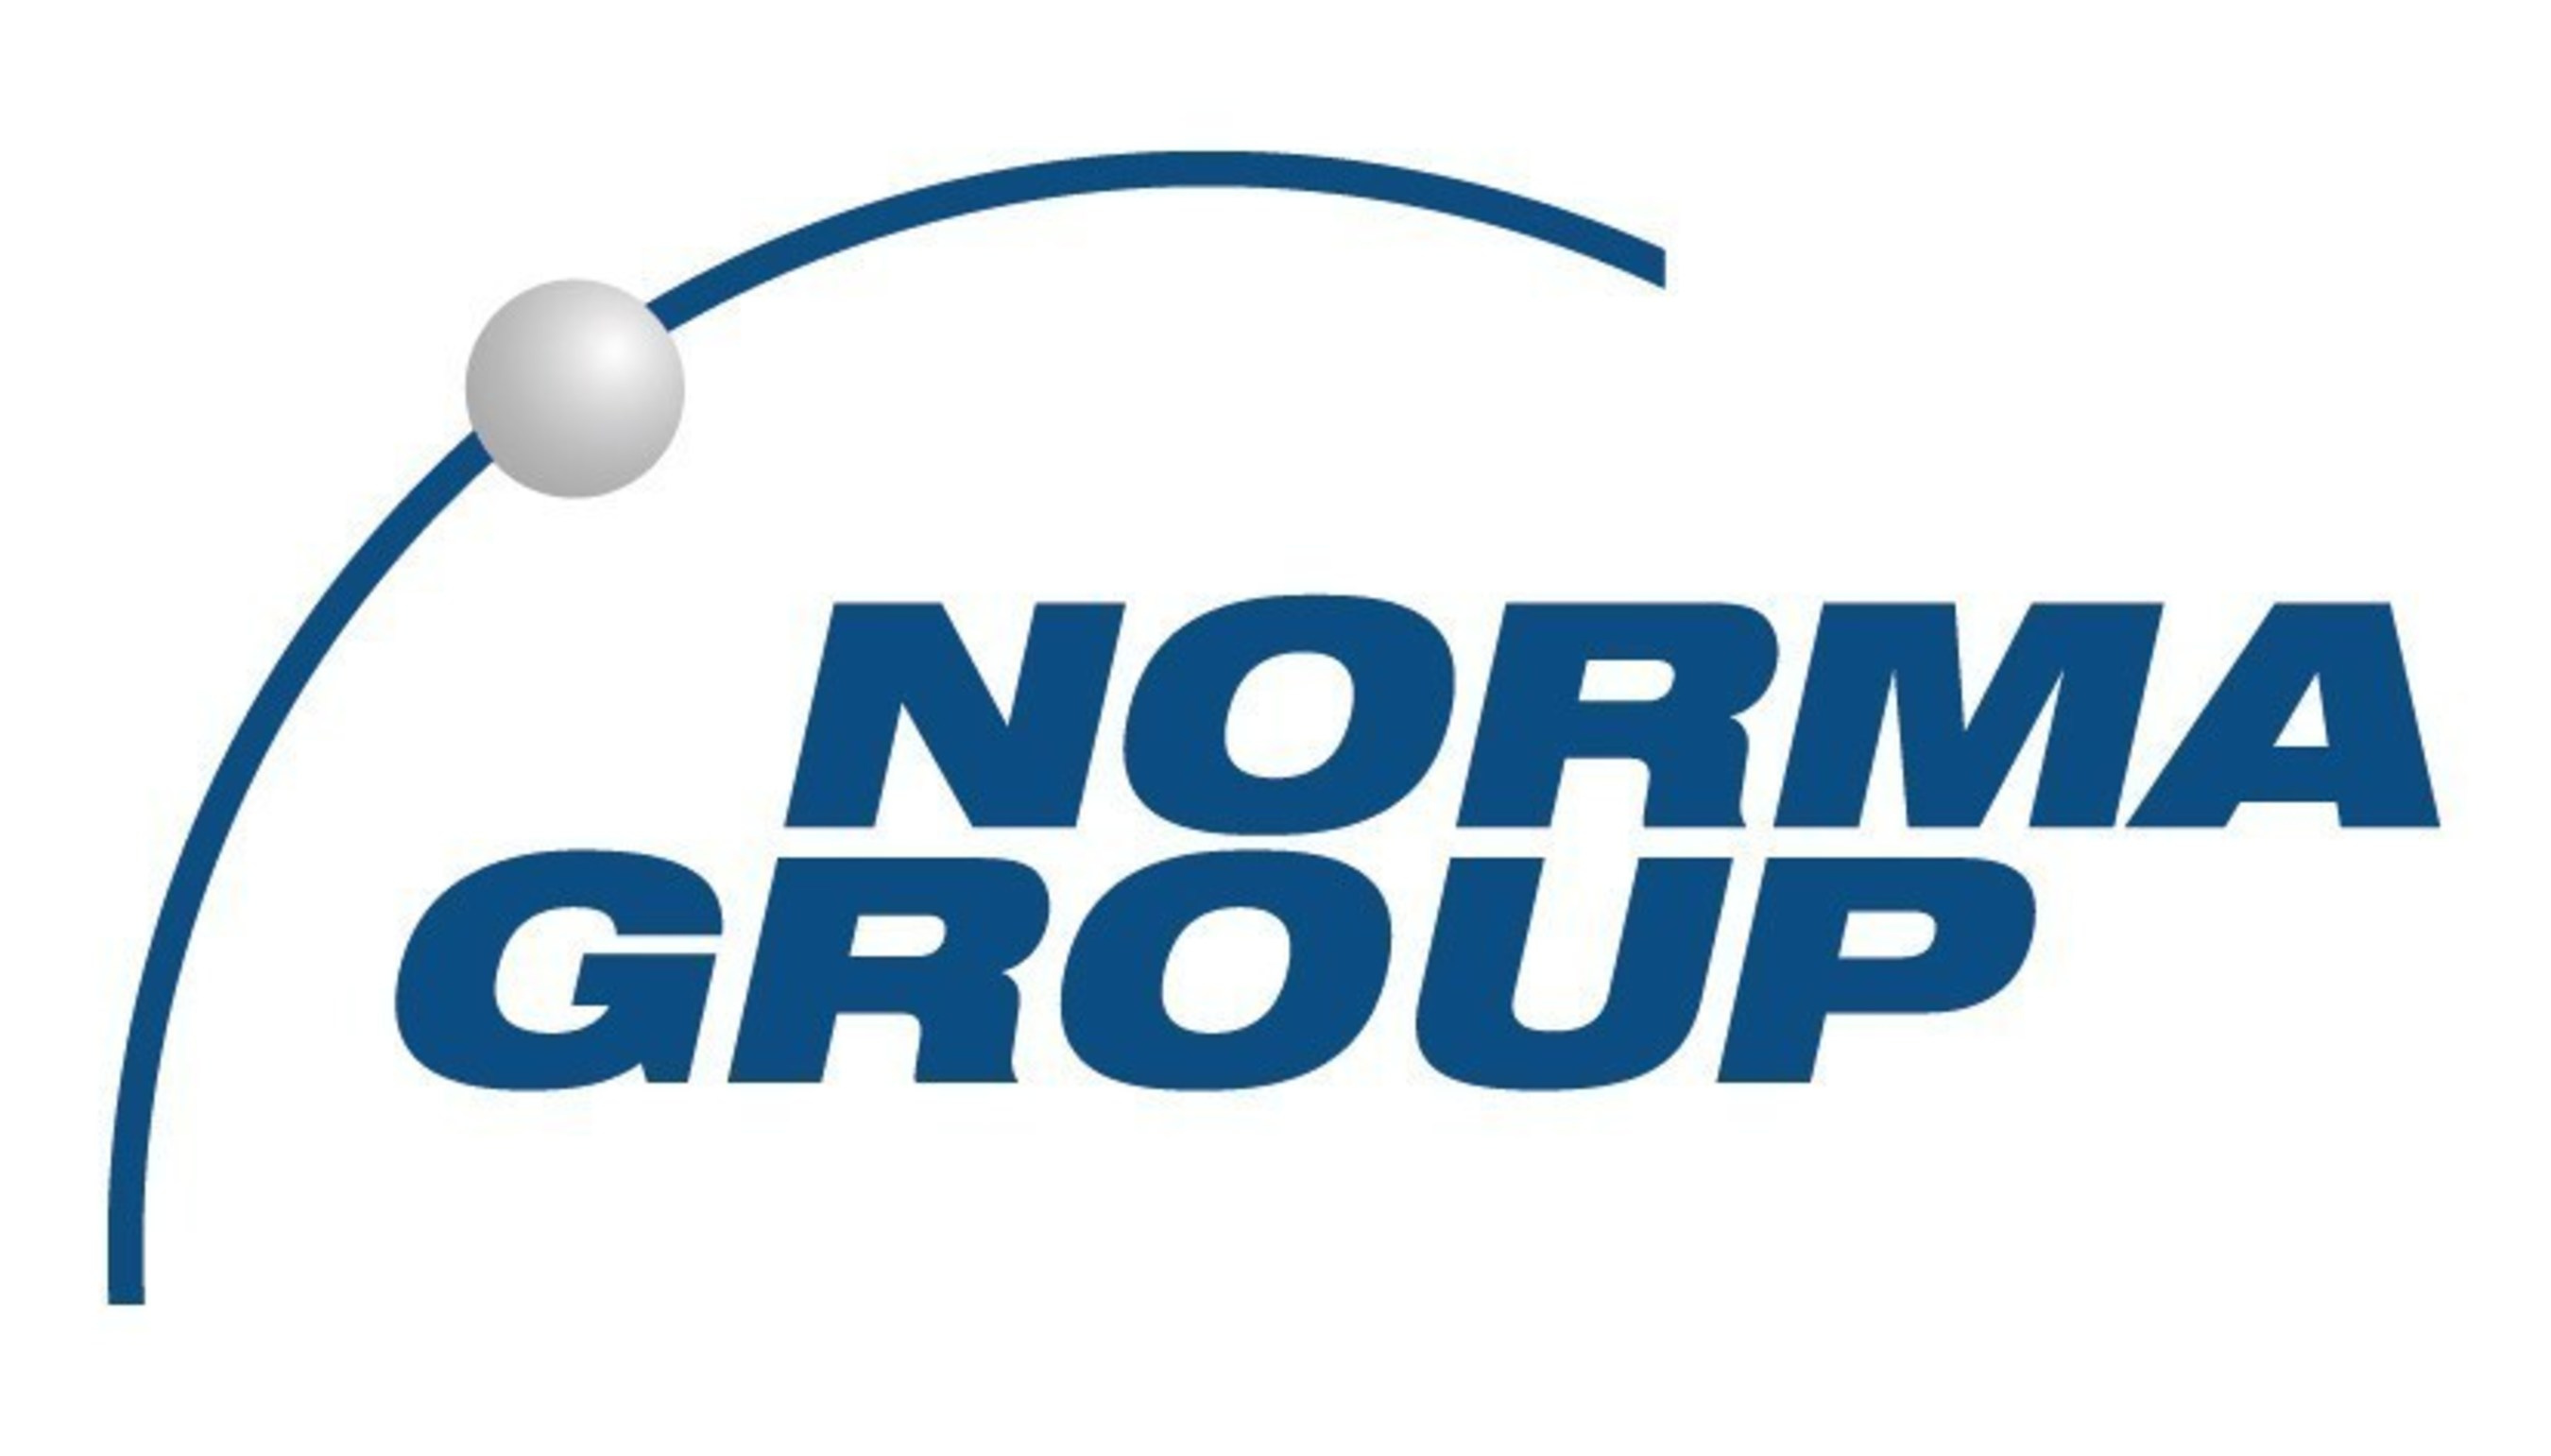 NORMA Group Logo 2015